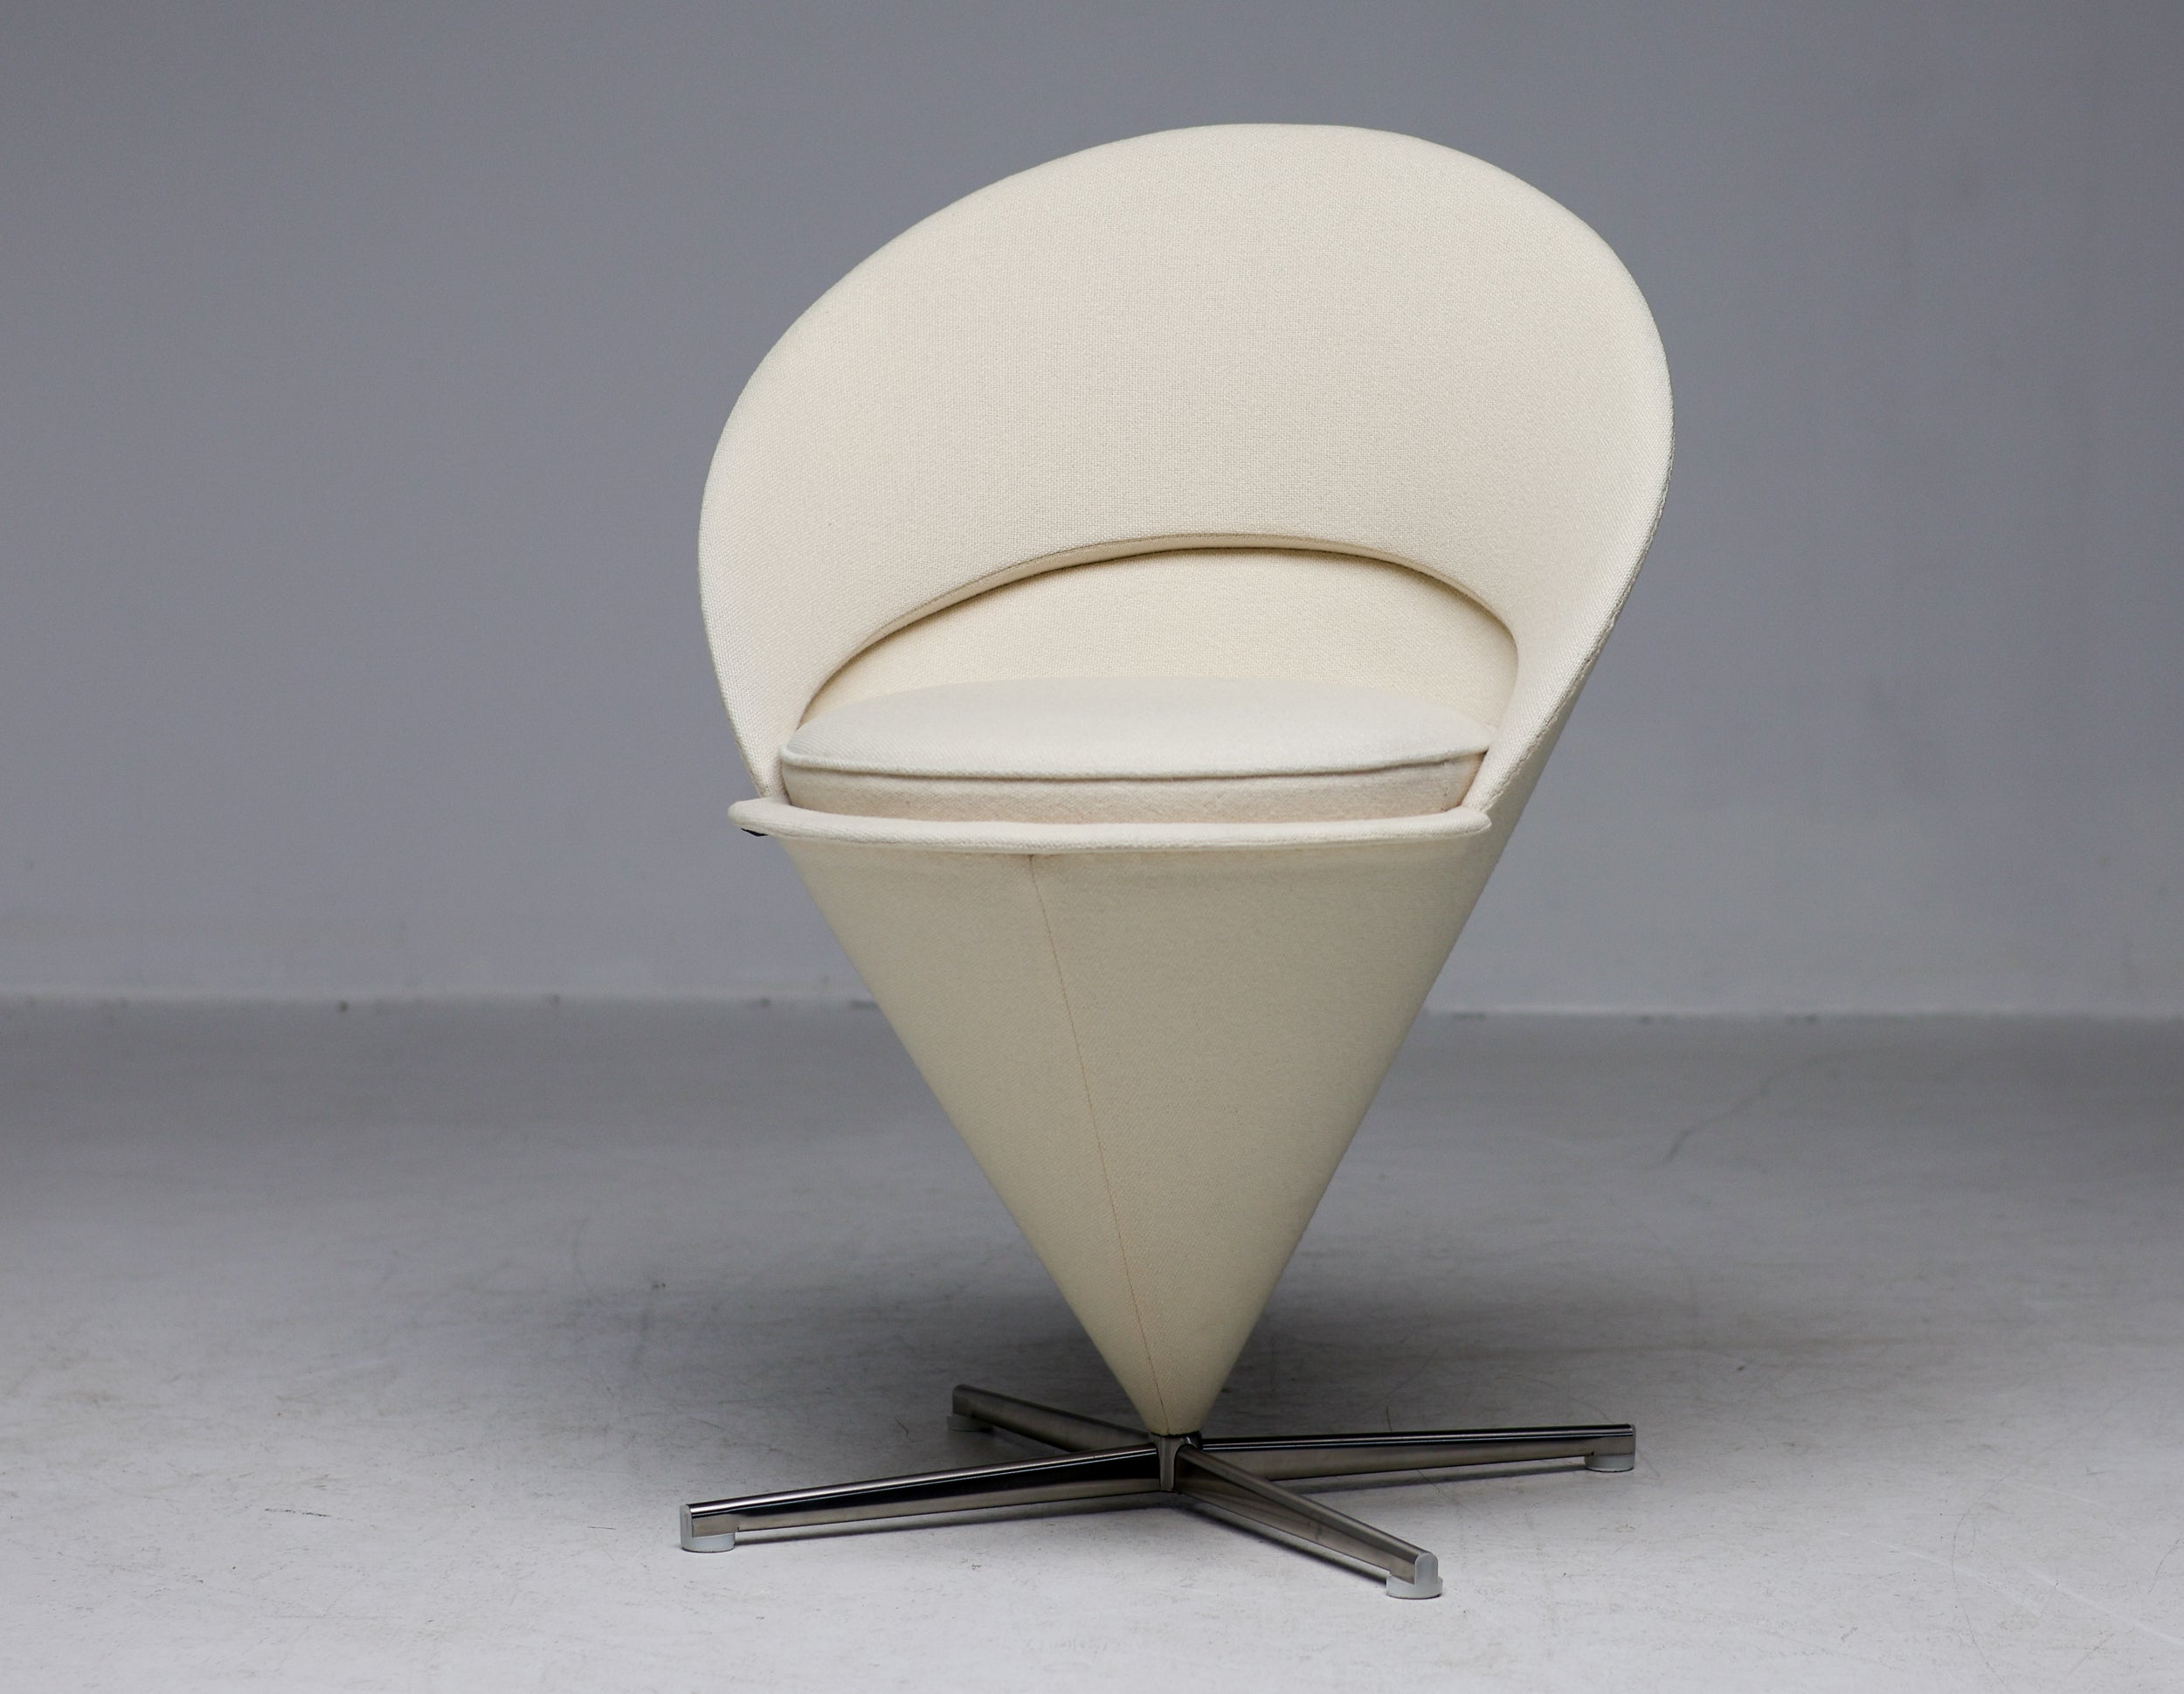 Verner Panton a conçu une chaise spécialement pour le restaurant Kom Igen au Danemark : la Cone Chair. 
Comme son nom l'indique, le corps de la chaise prend la forme d'un cône. Dressée sur sa pointe, une coque rembourrée en demi-cercle se prolonge